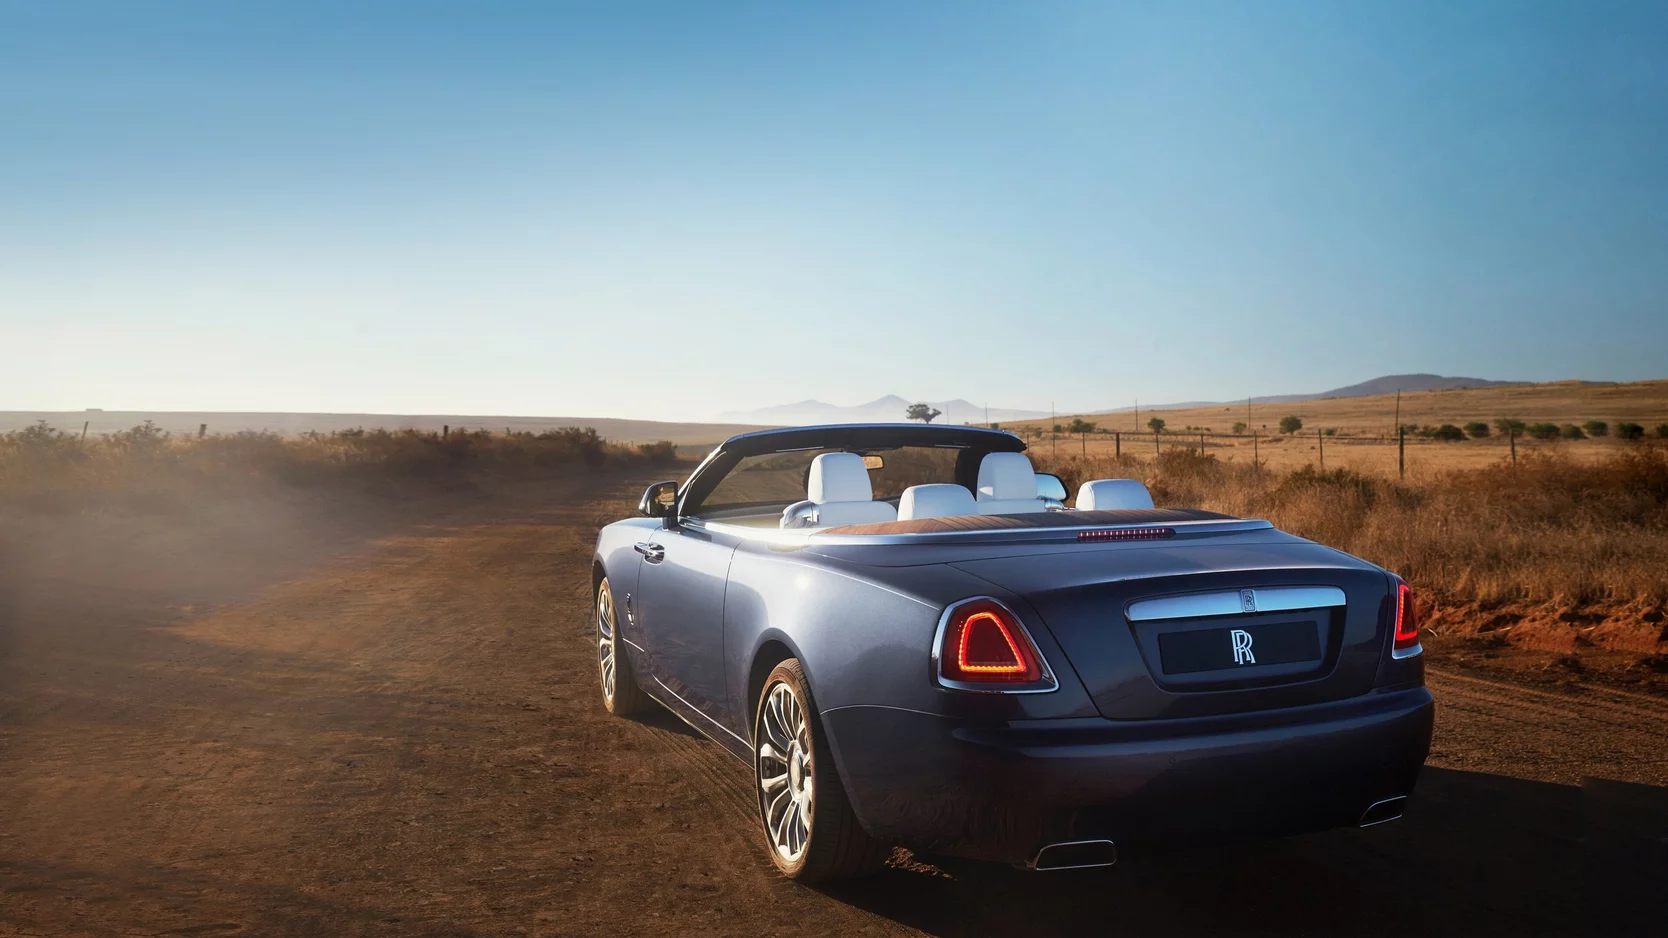 Harga Rolls Royce Dawn Terbaru, Review Lengkap Spesifikasi dan Interior!